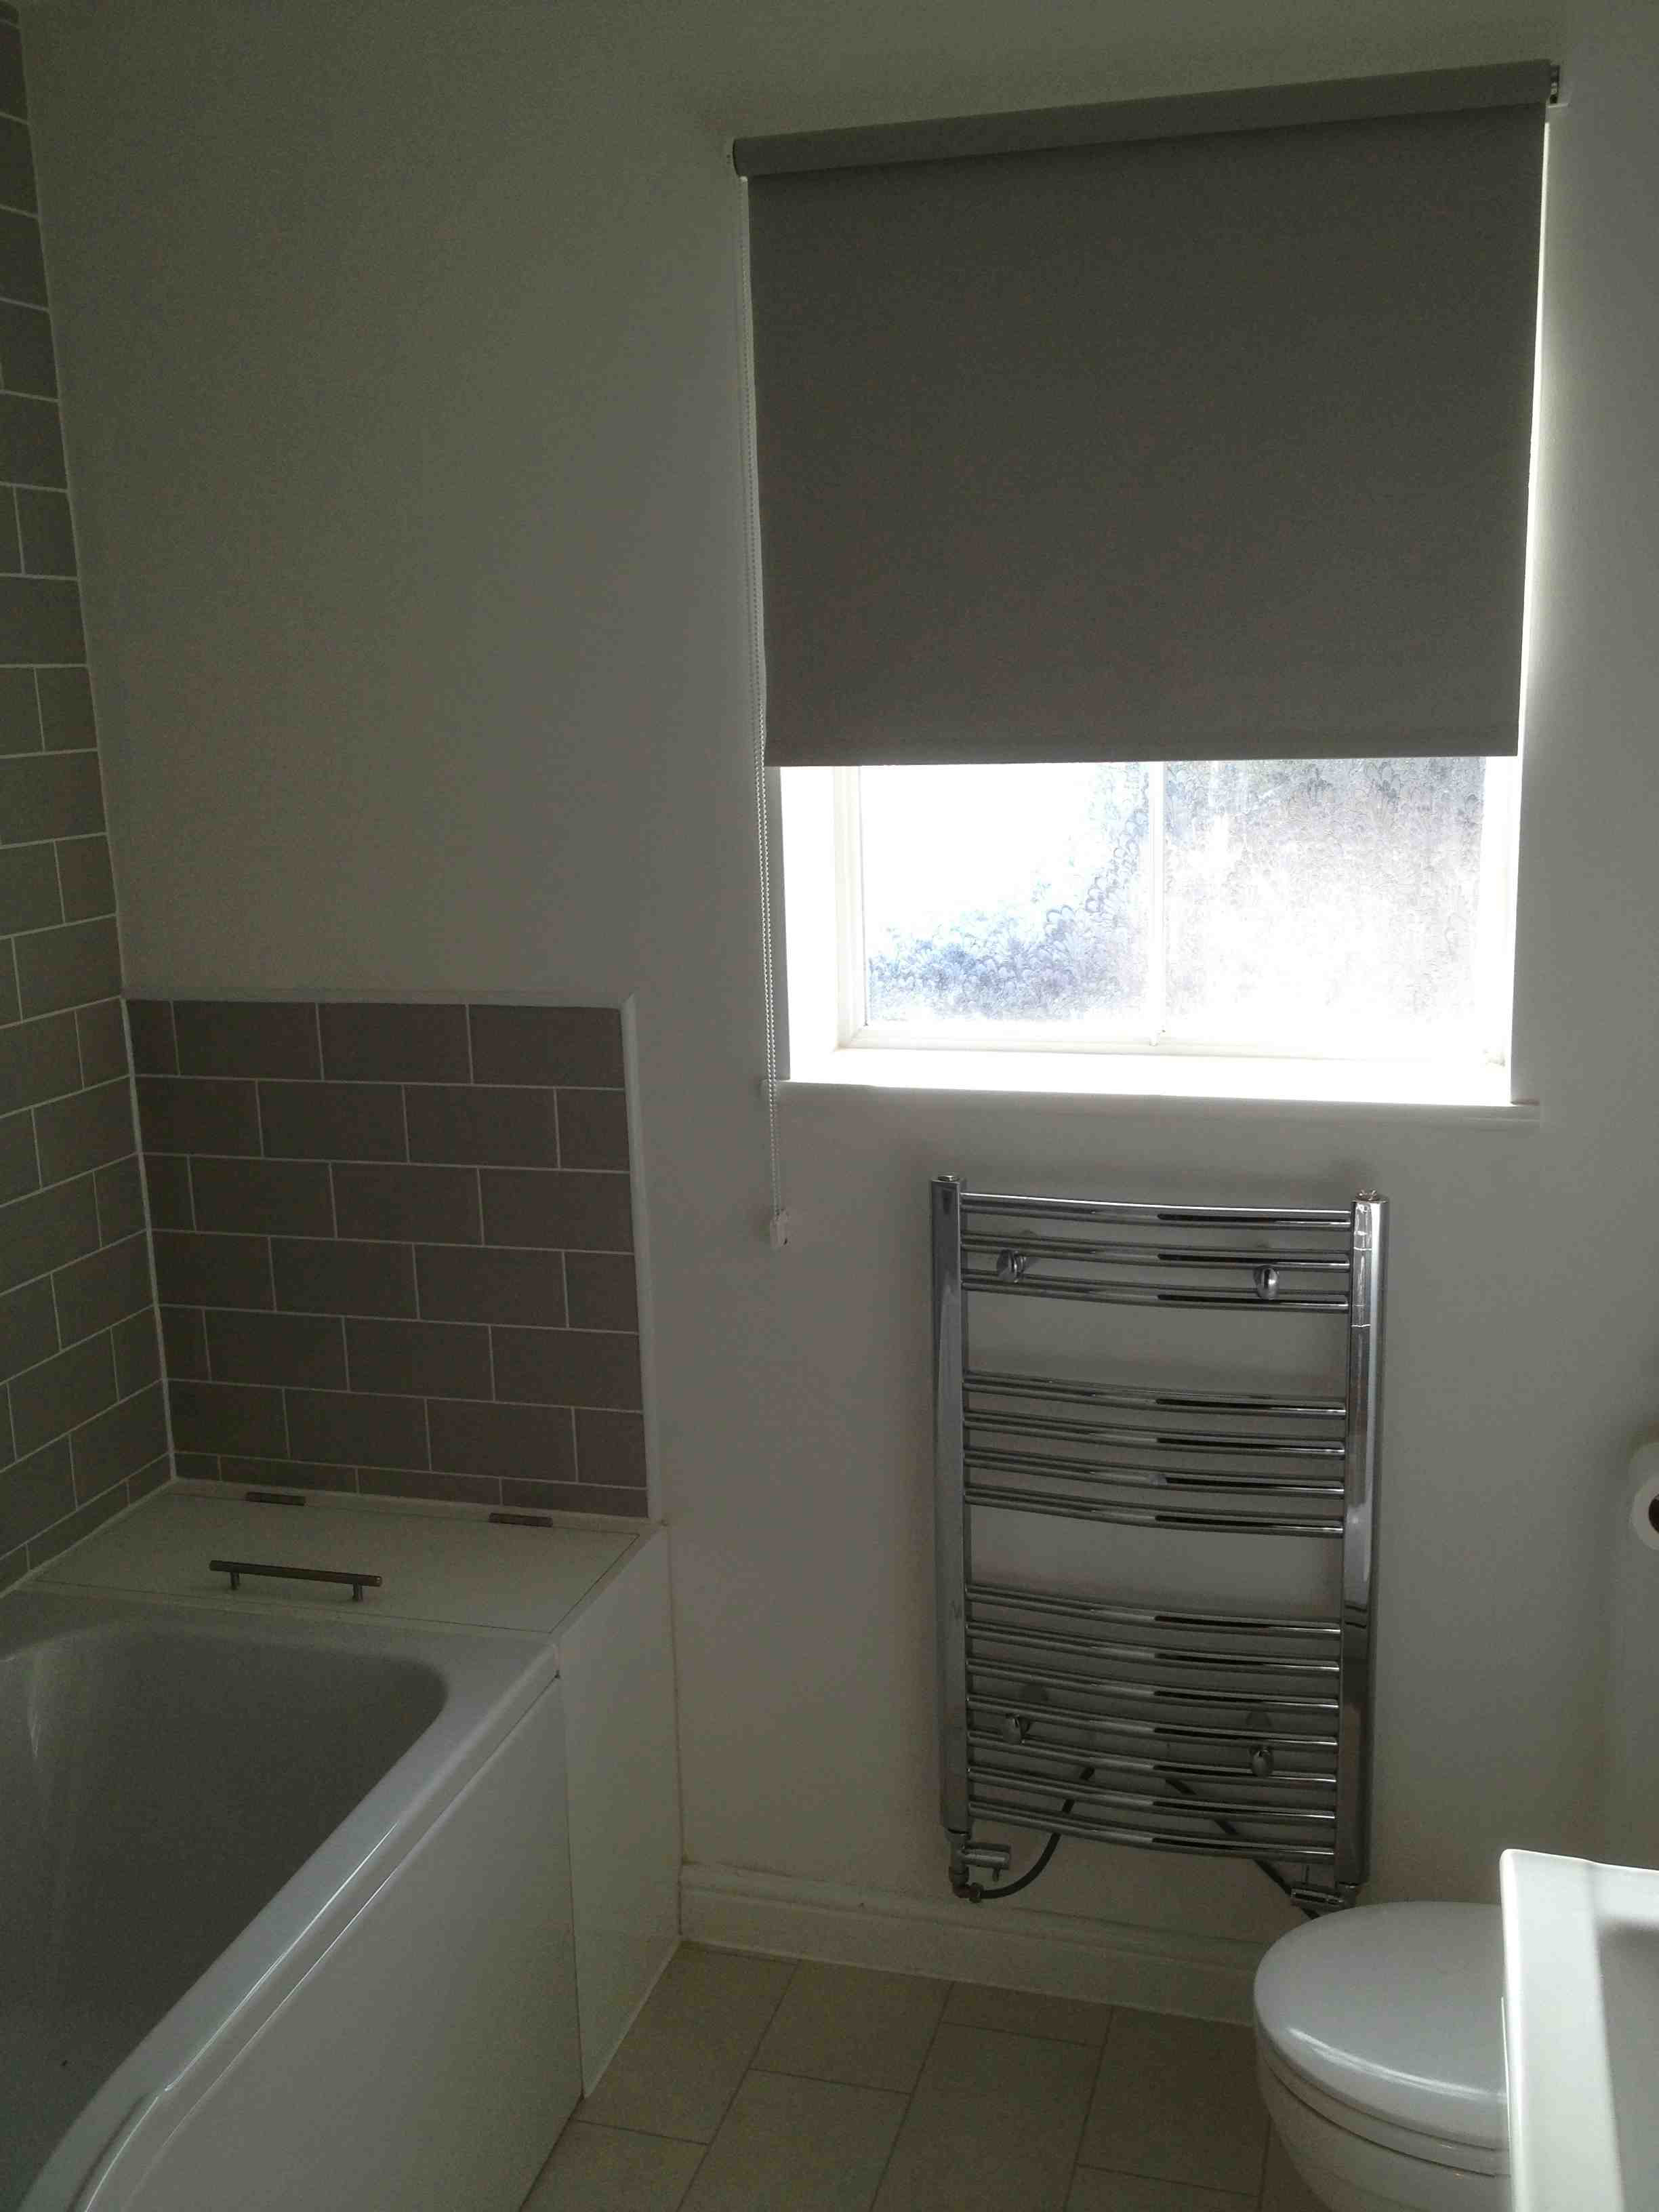 Half Tiled Or Fully Tiled Bathroom Walls Uk Bathroom Guru